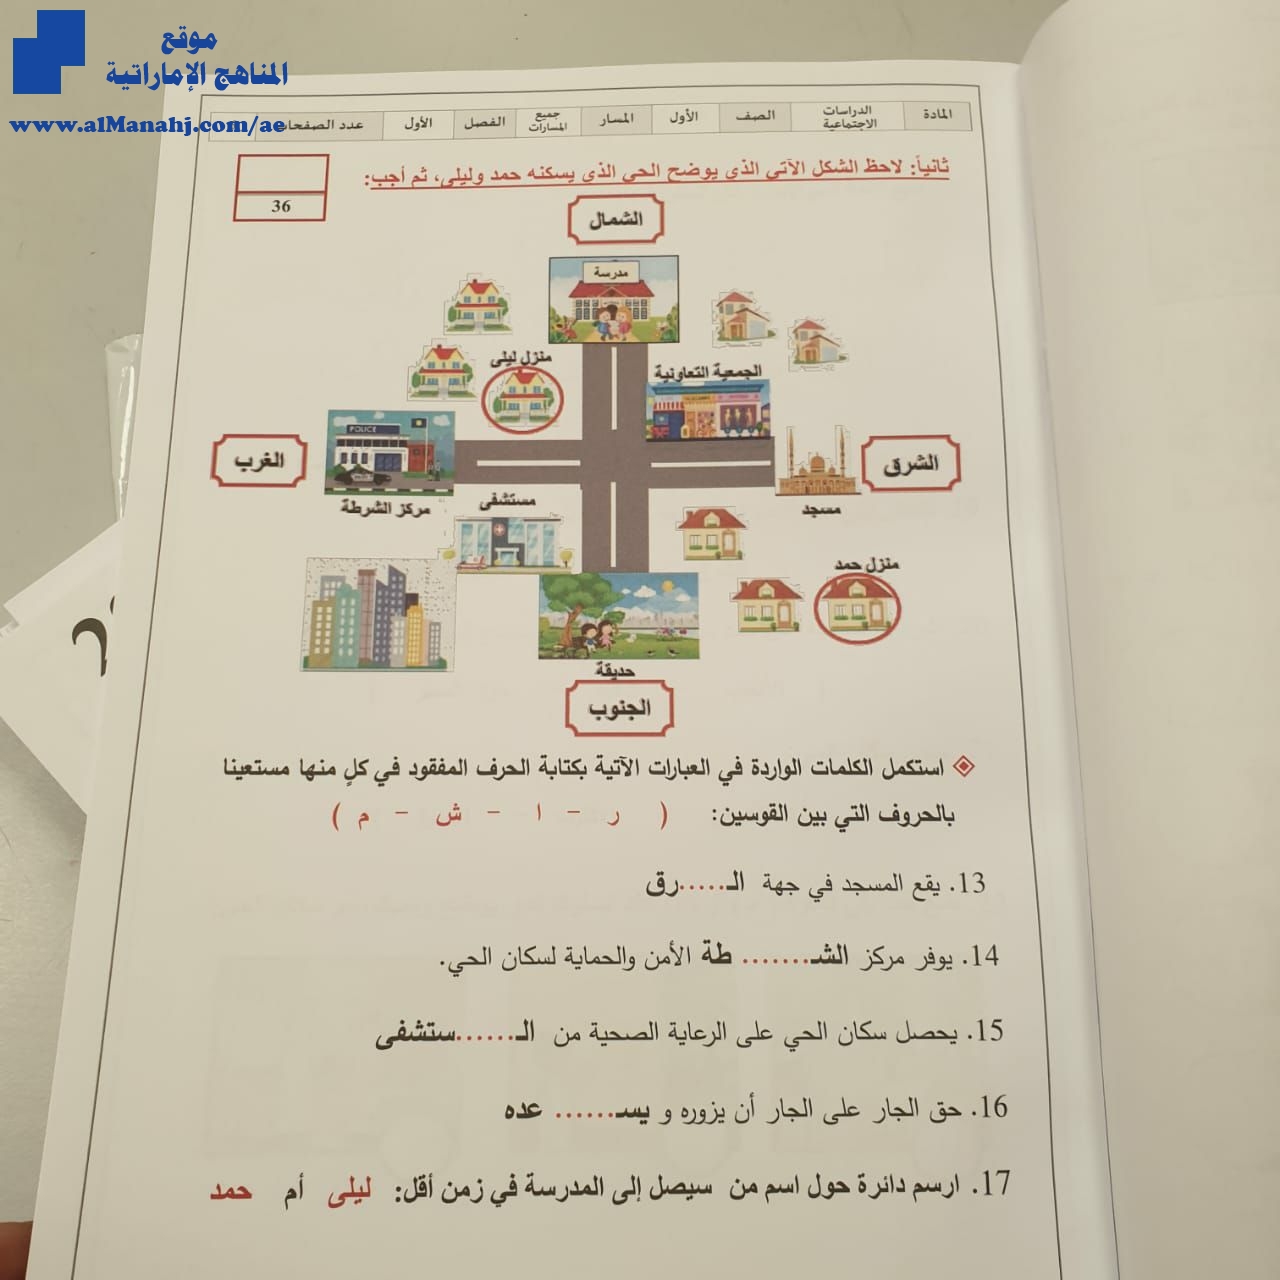 امتحان نهاية الفصل الأول الصف الأول اجتماعيات الفصل الأول 2019 2020 المناهج الإماراتية